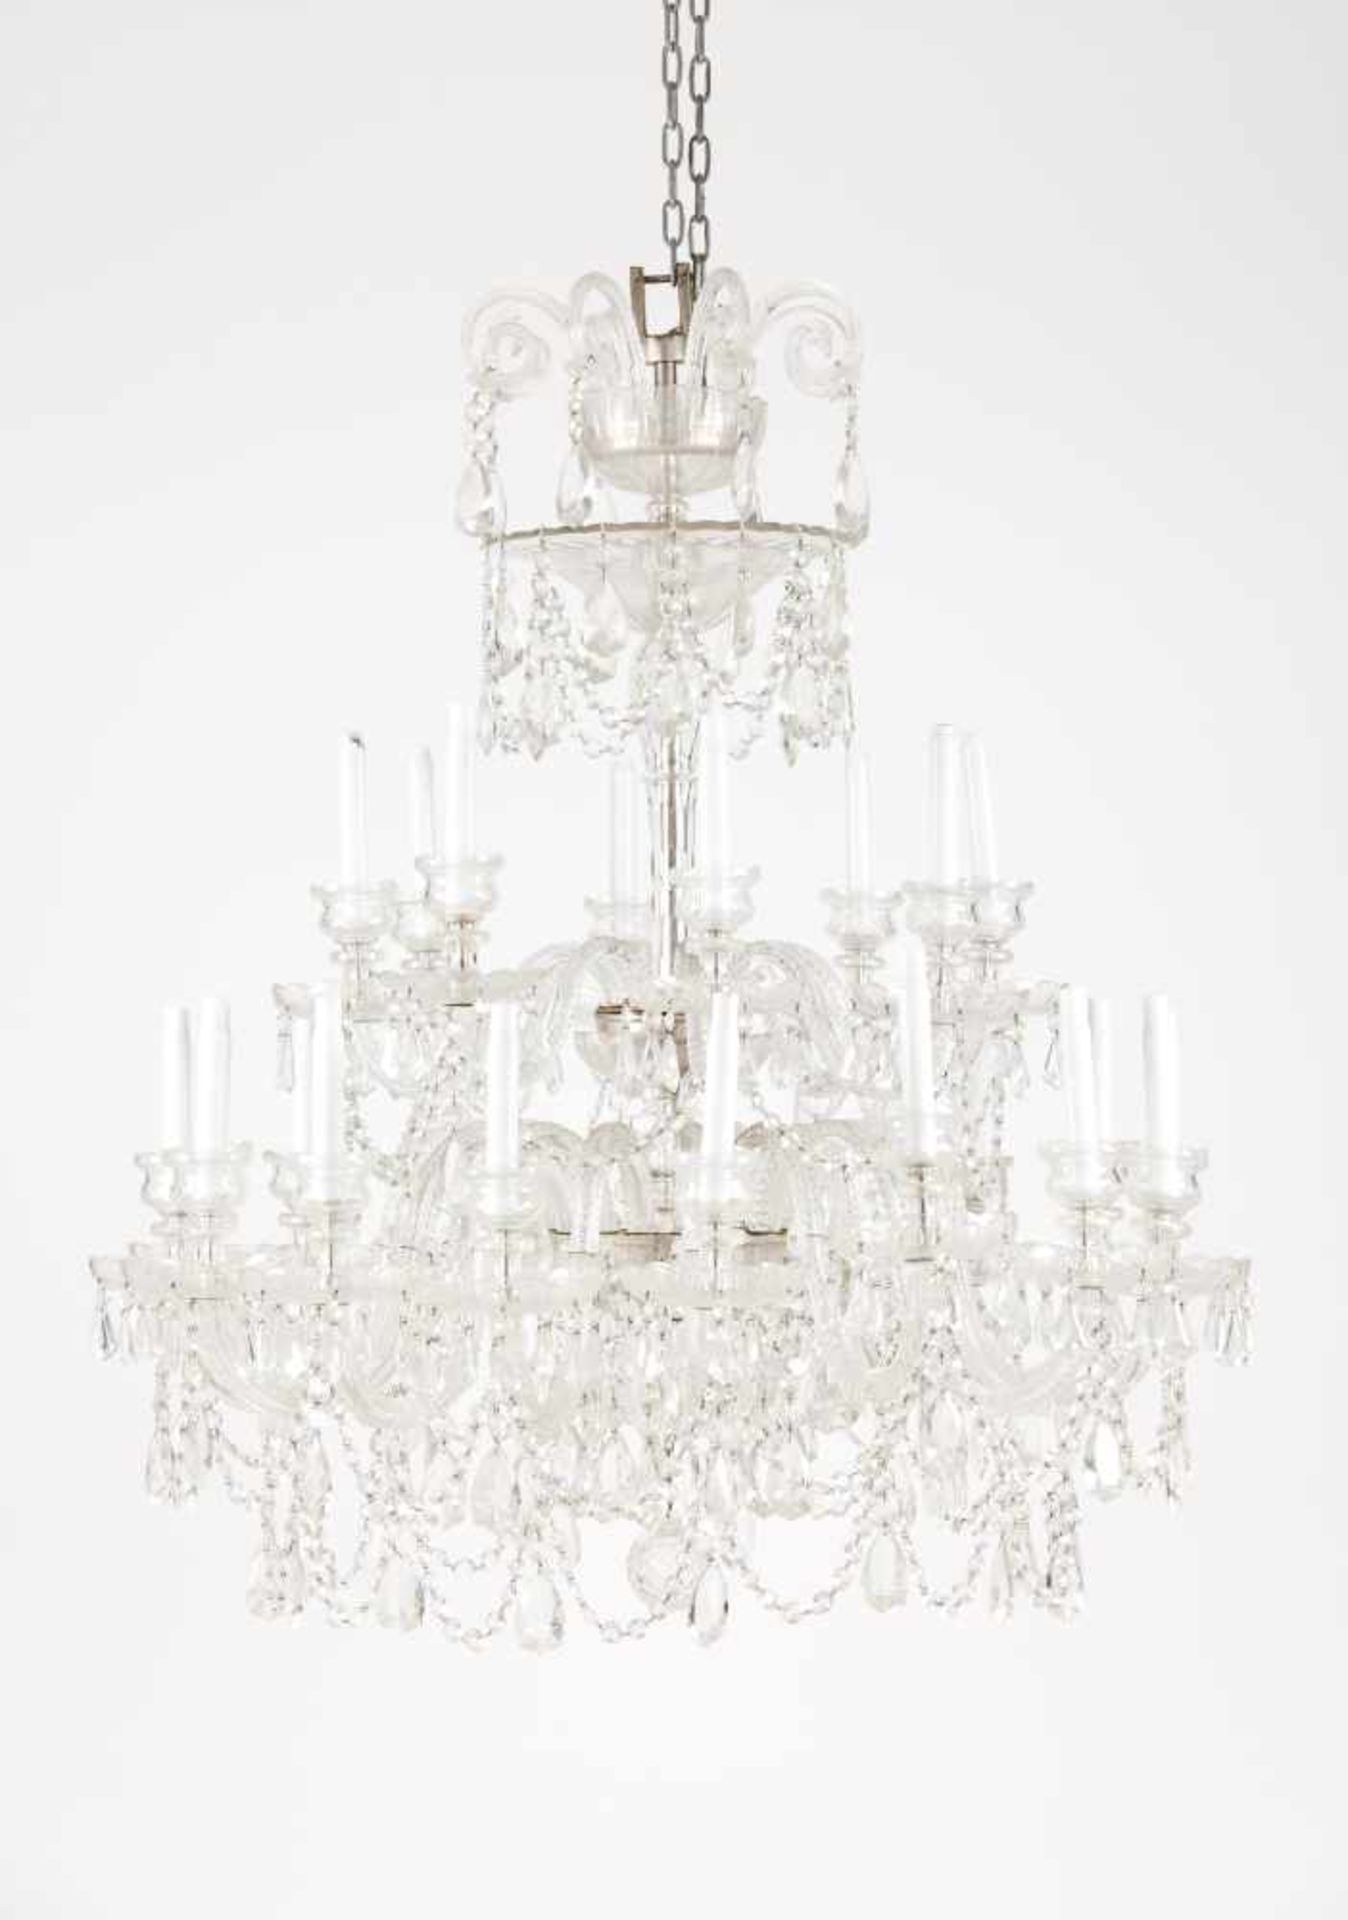 A large twenty two light chandelier